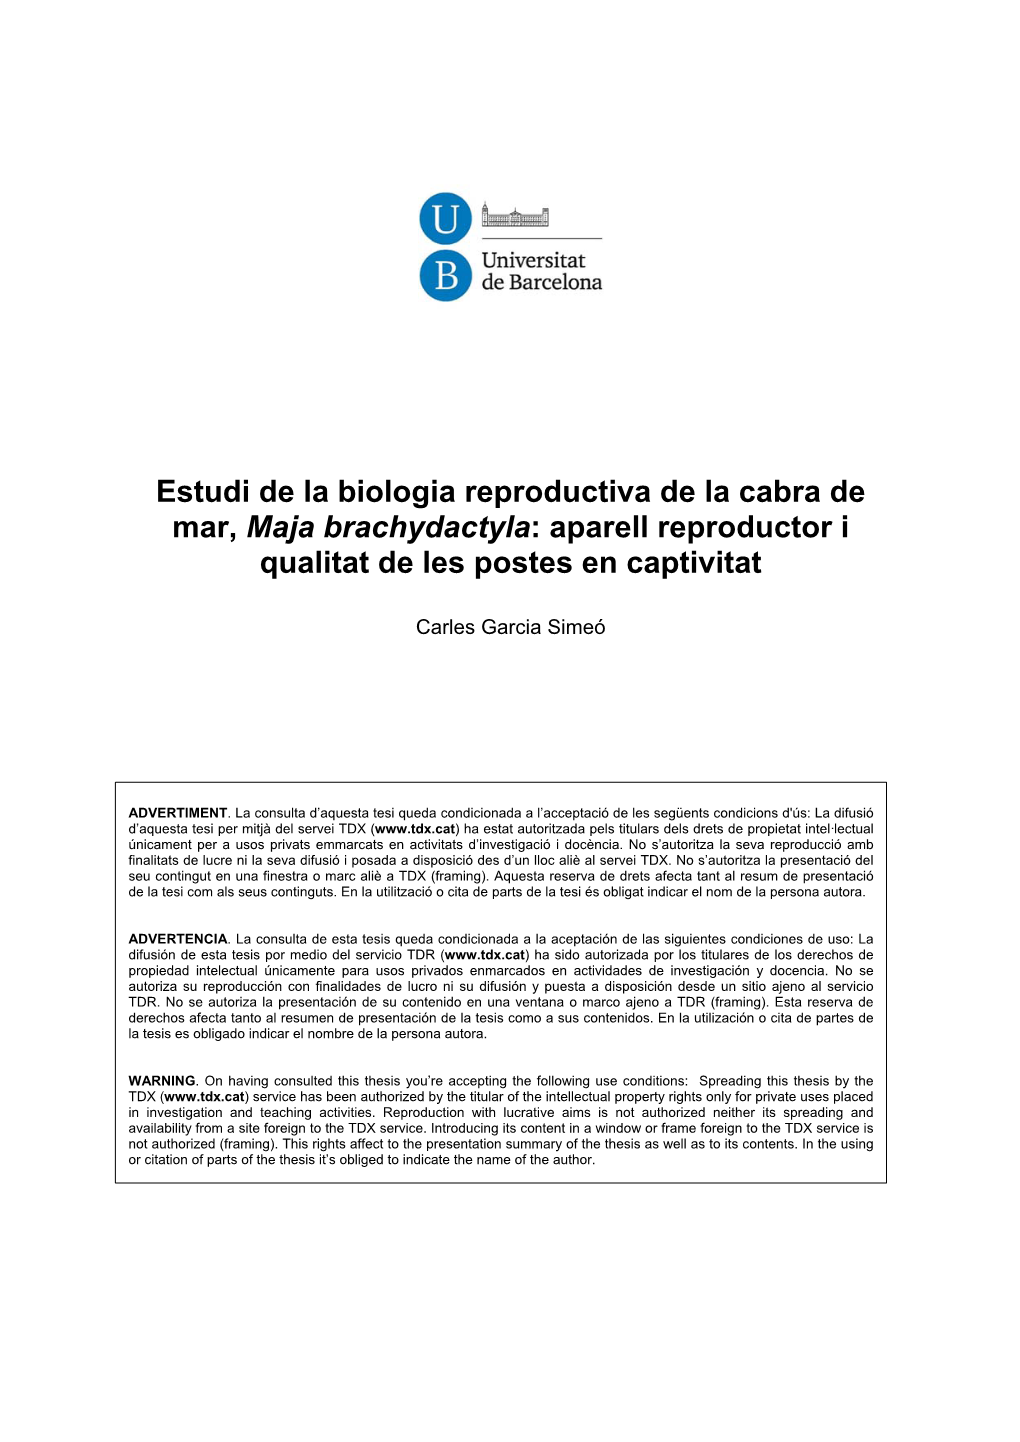 Estudi De La Biologia Reproductiva De La Cabra De Mar, Maja Brachydactyla: Aparell Reproductor I Qualitat De Les Postes En Captivitat